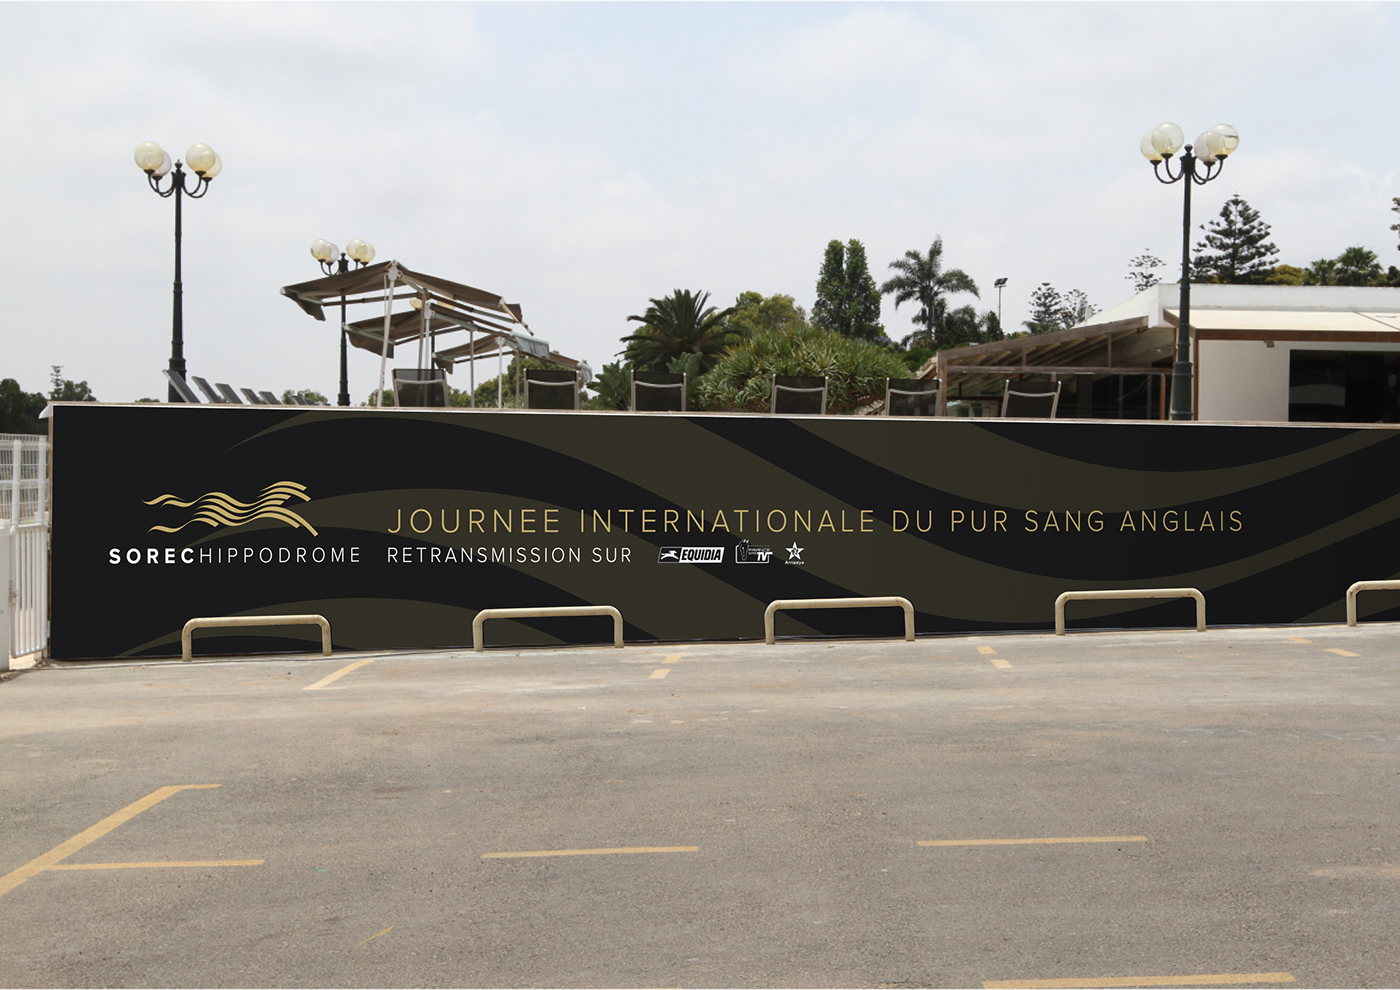 sorec horse turf hippodrome racecourse maroco royal breeding bet Maroc win haras logo identity